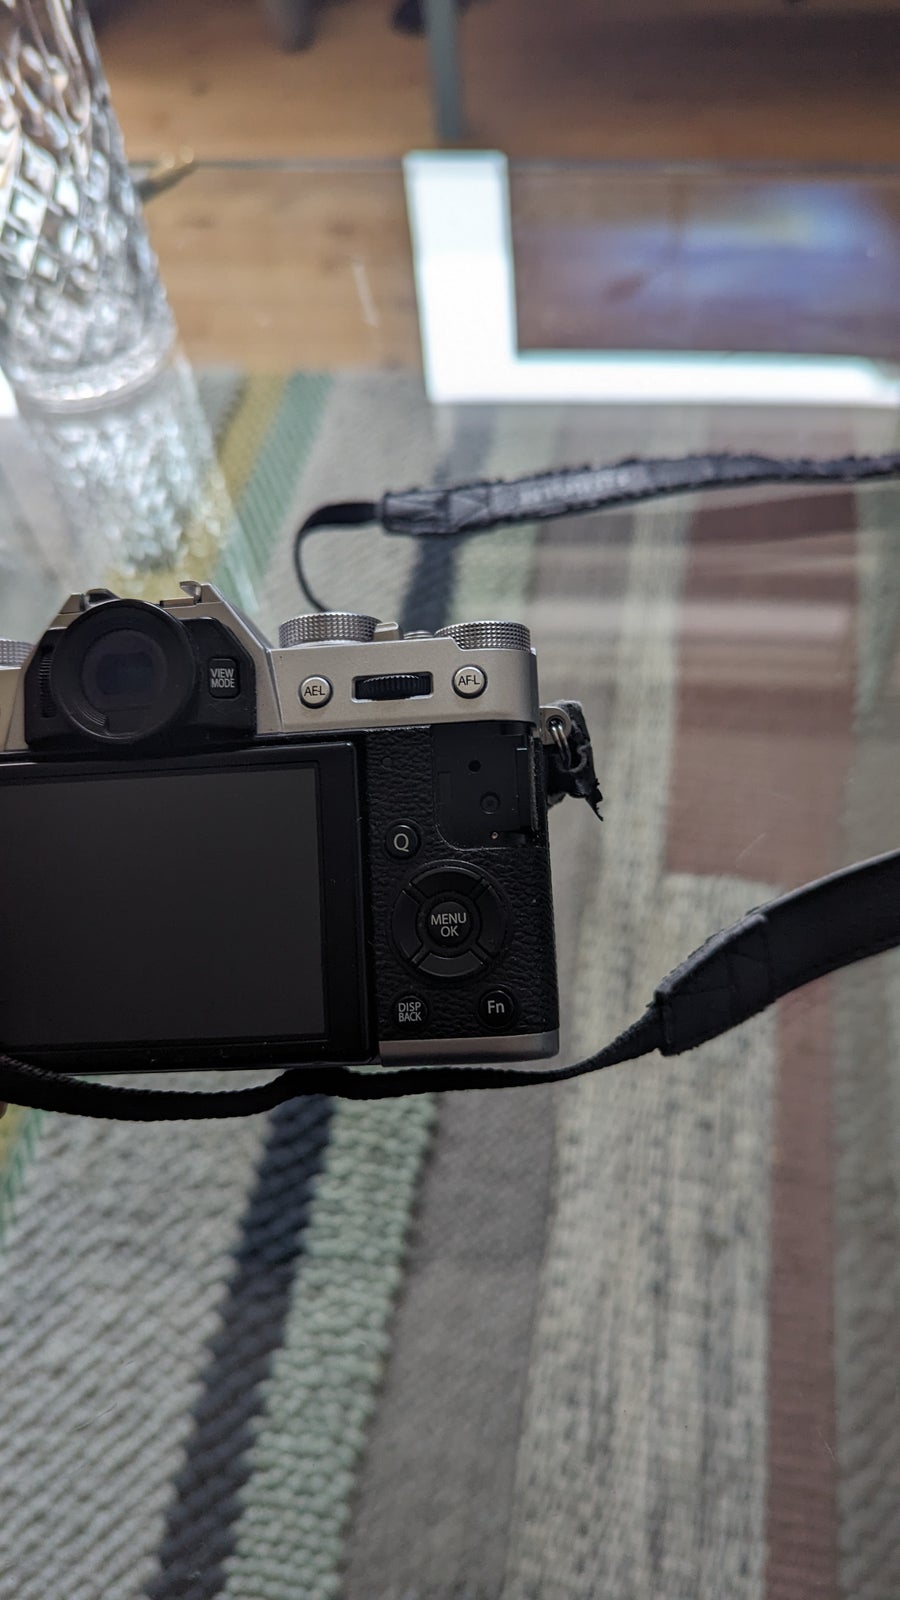 Canon, Fujifilm XT10, 16 megapixels